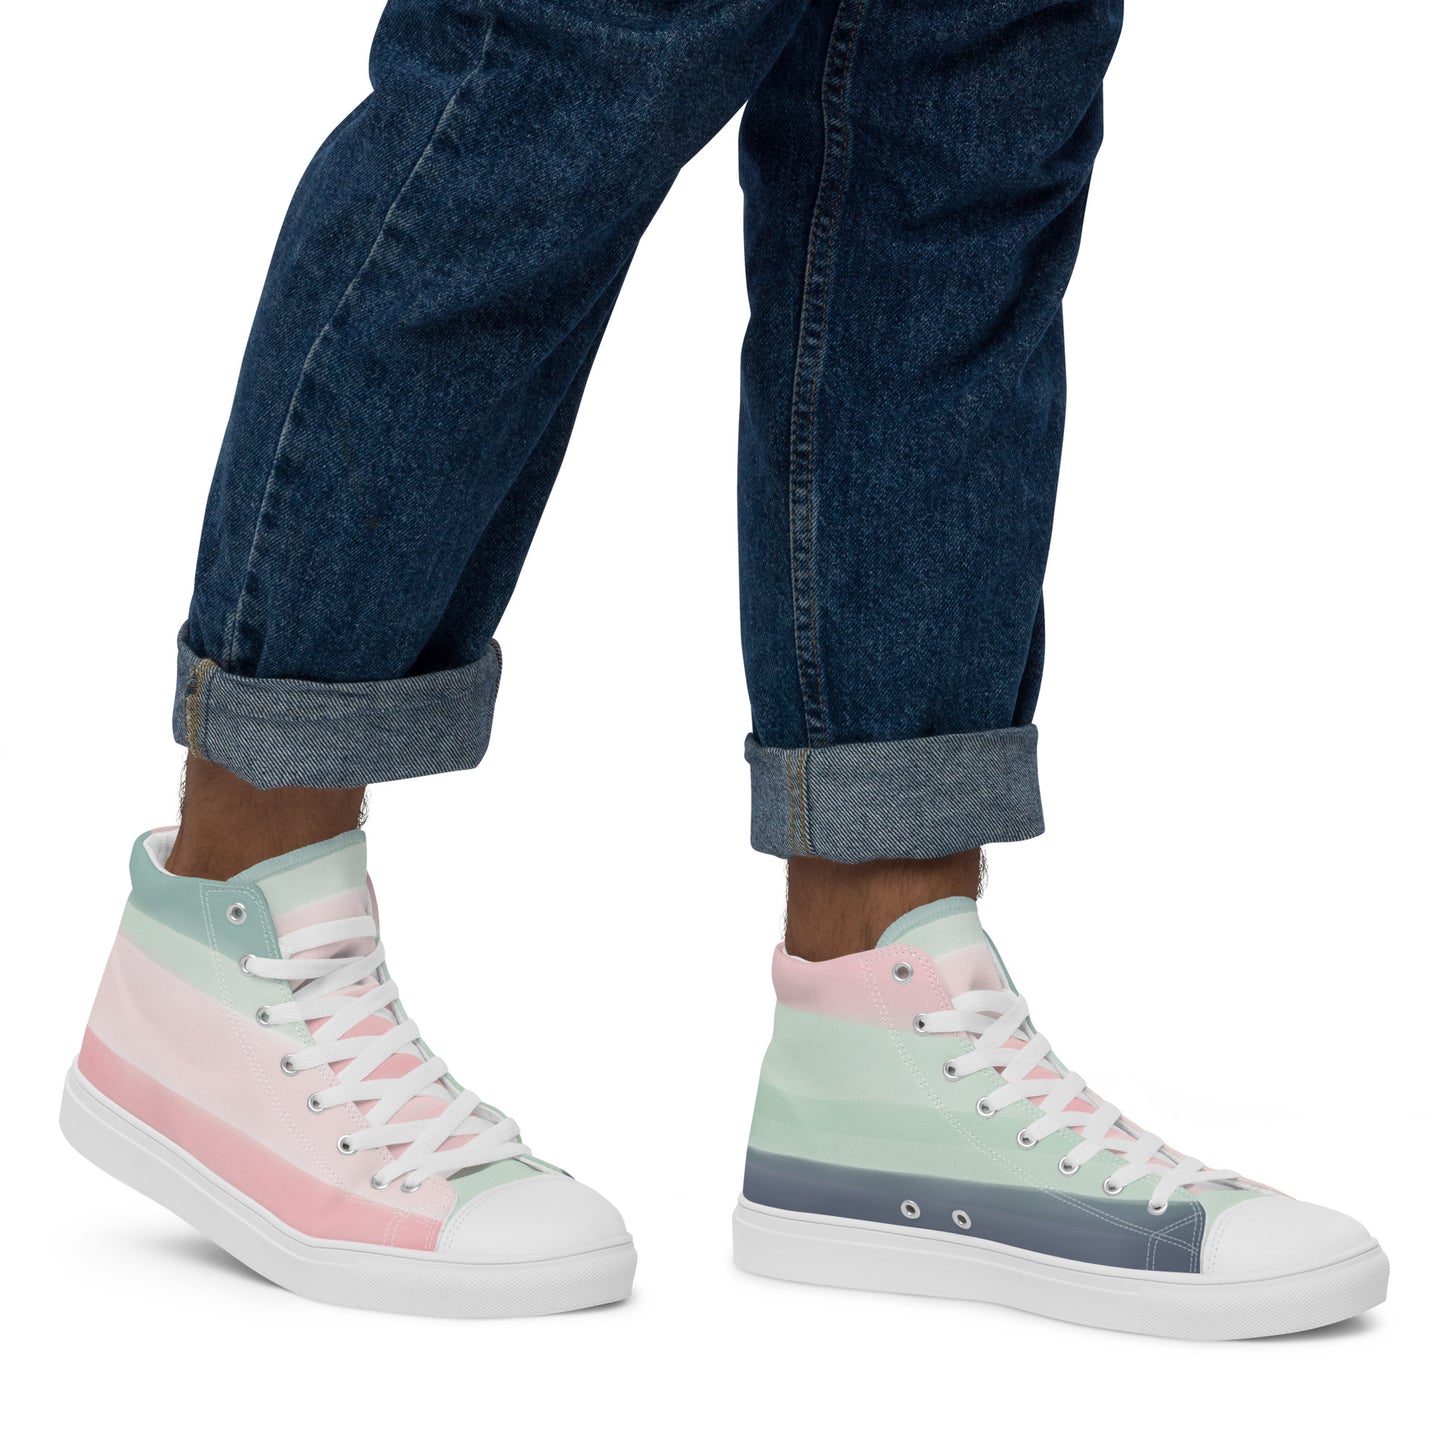 Pastel Stripes - Men’s high top canvas shoes Mens High Top Shoes Outside Australia